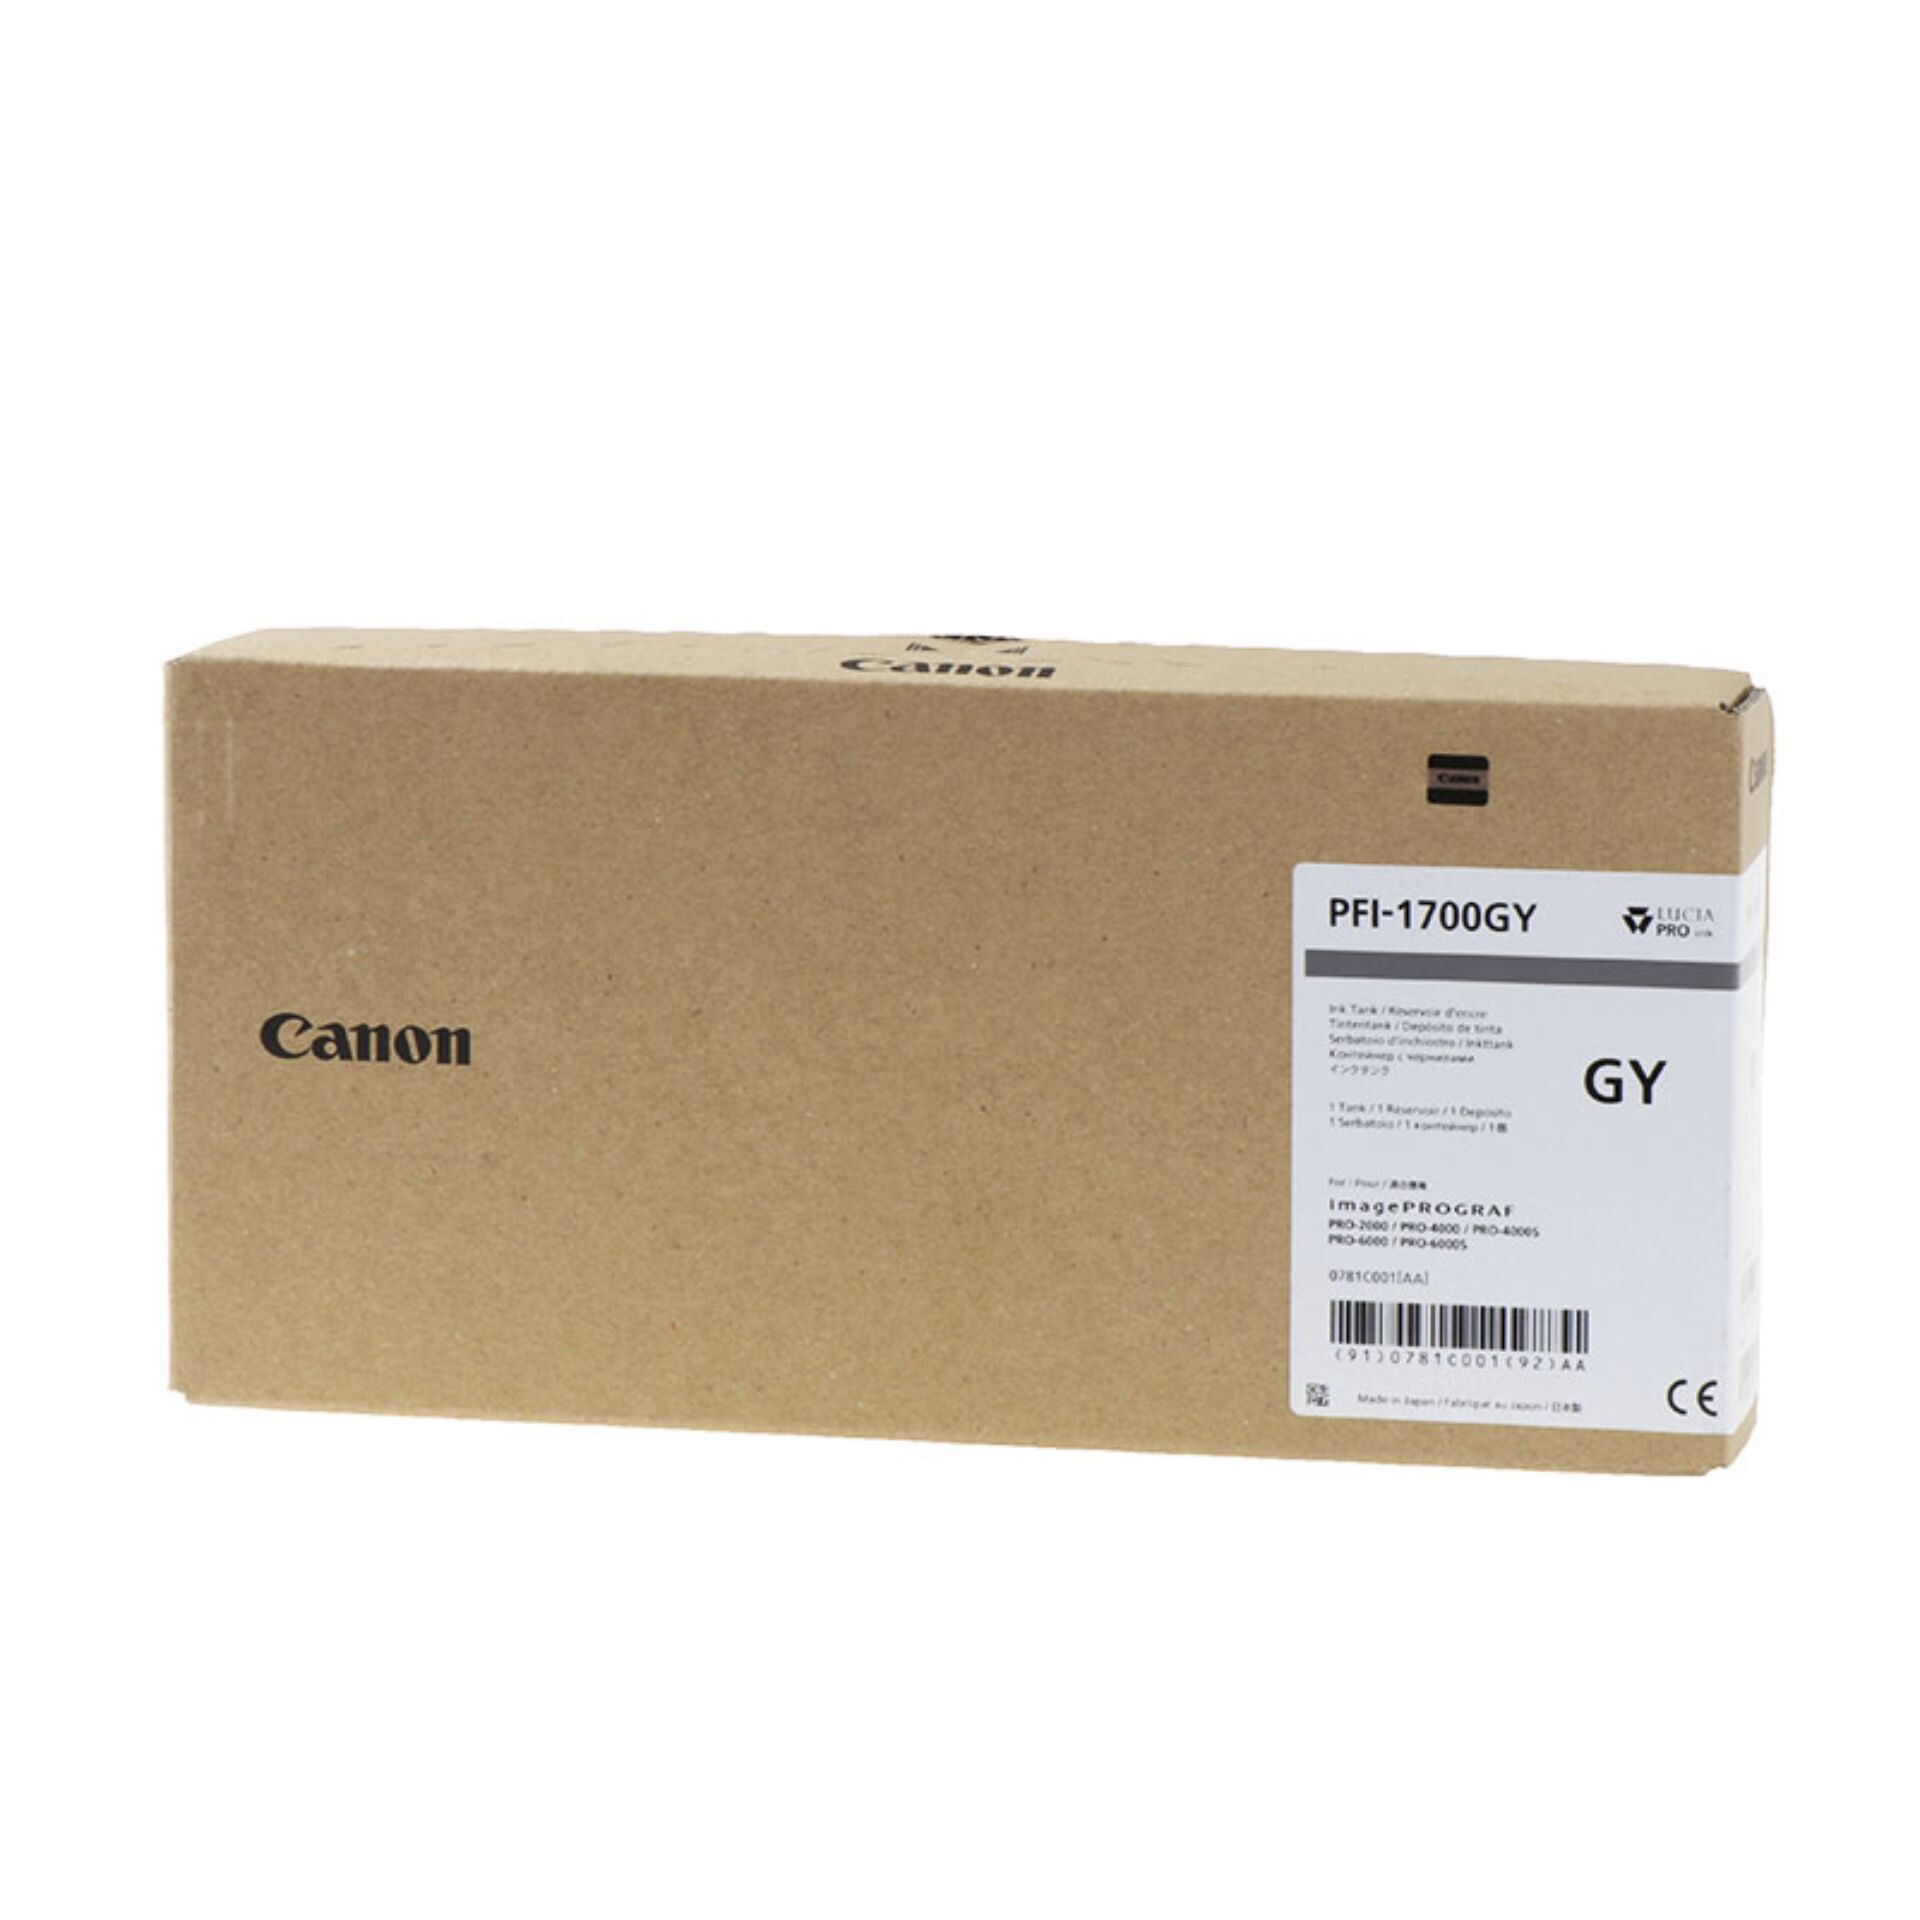 Canon PFI-1700 Tinte grau 700 ml